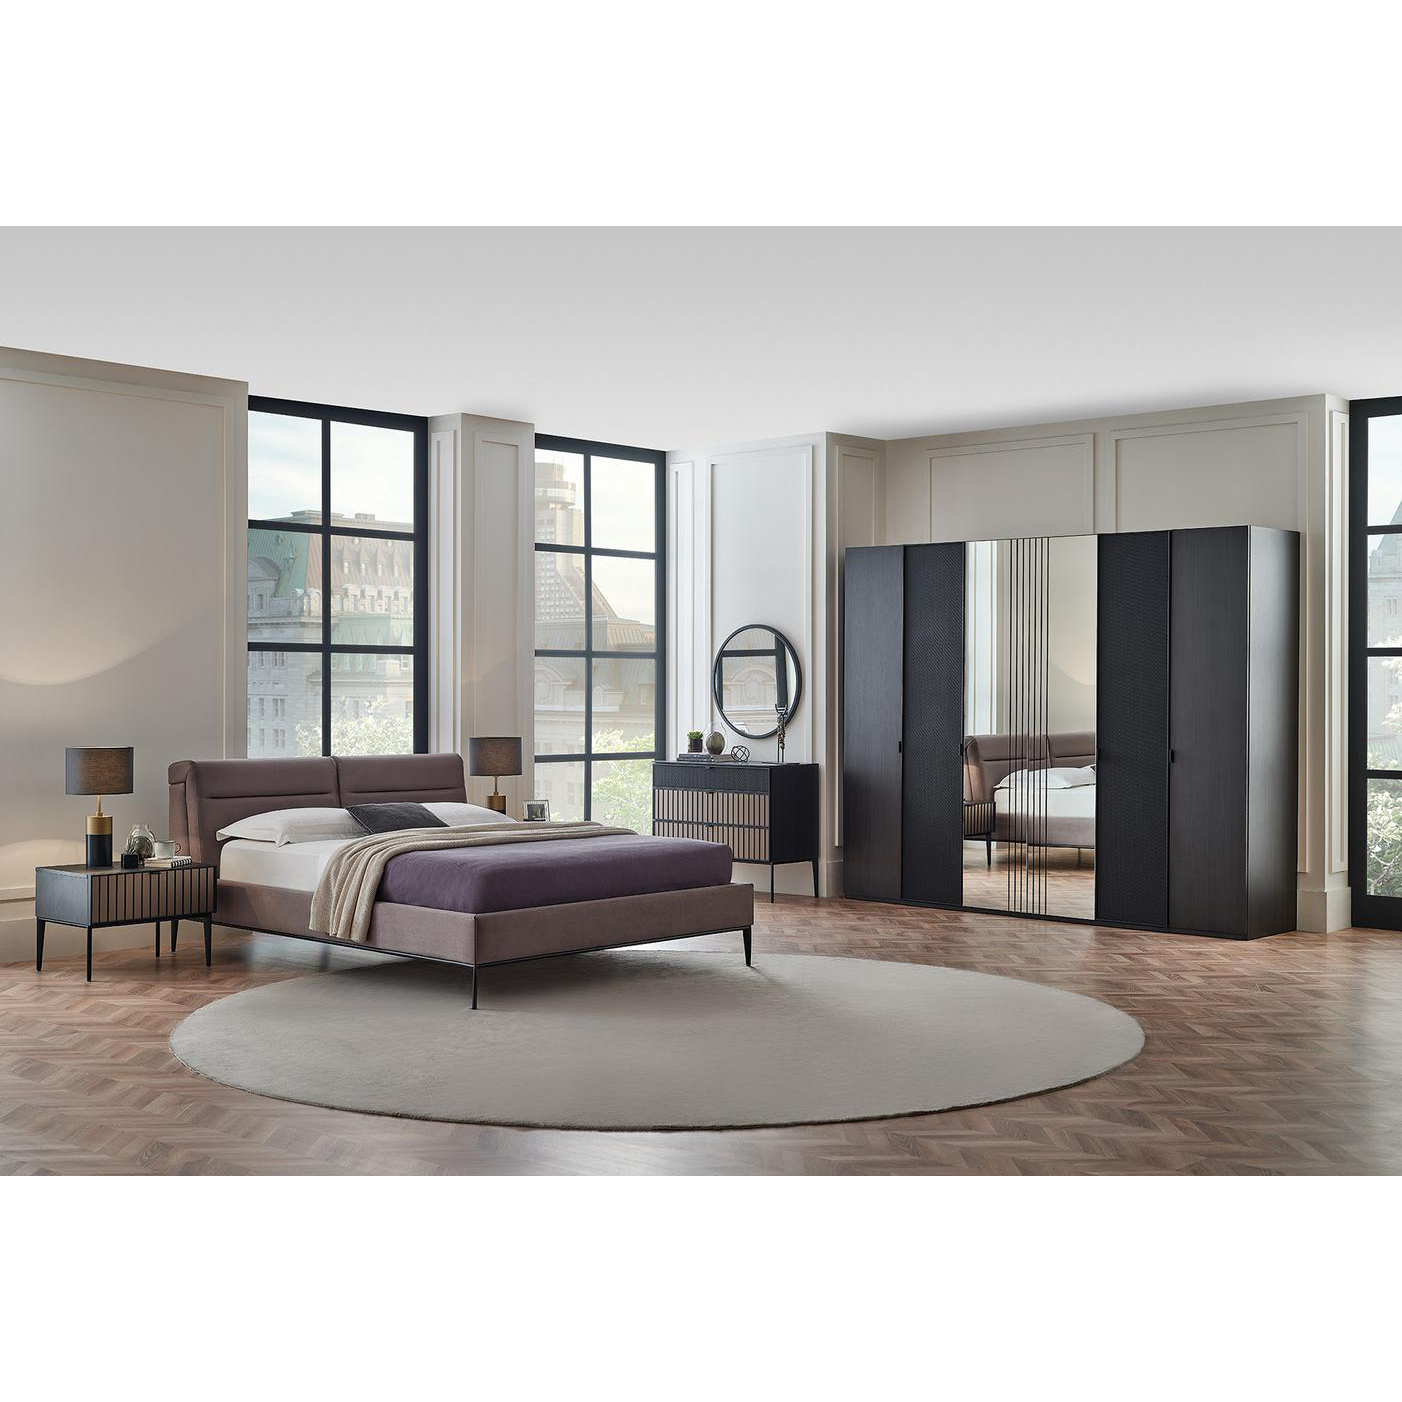 Кровать Enza Home Riga, двуспальная, с подъемным механизмом, 160х200 см